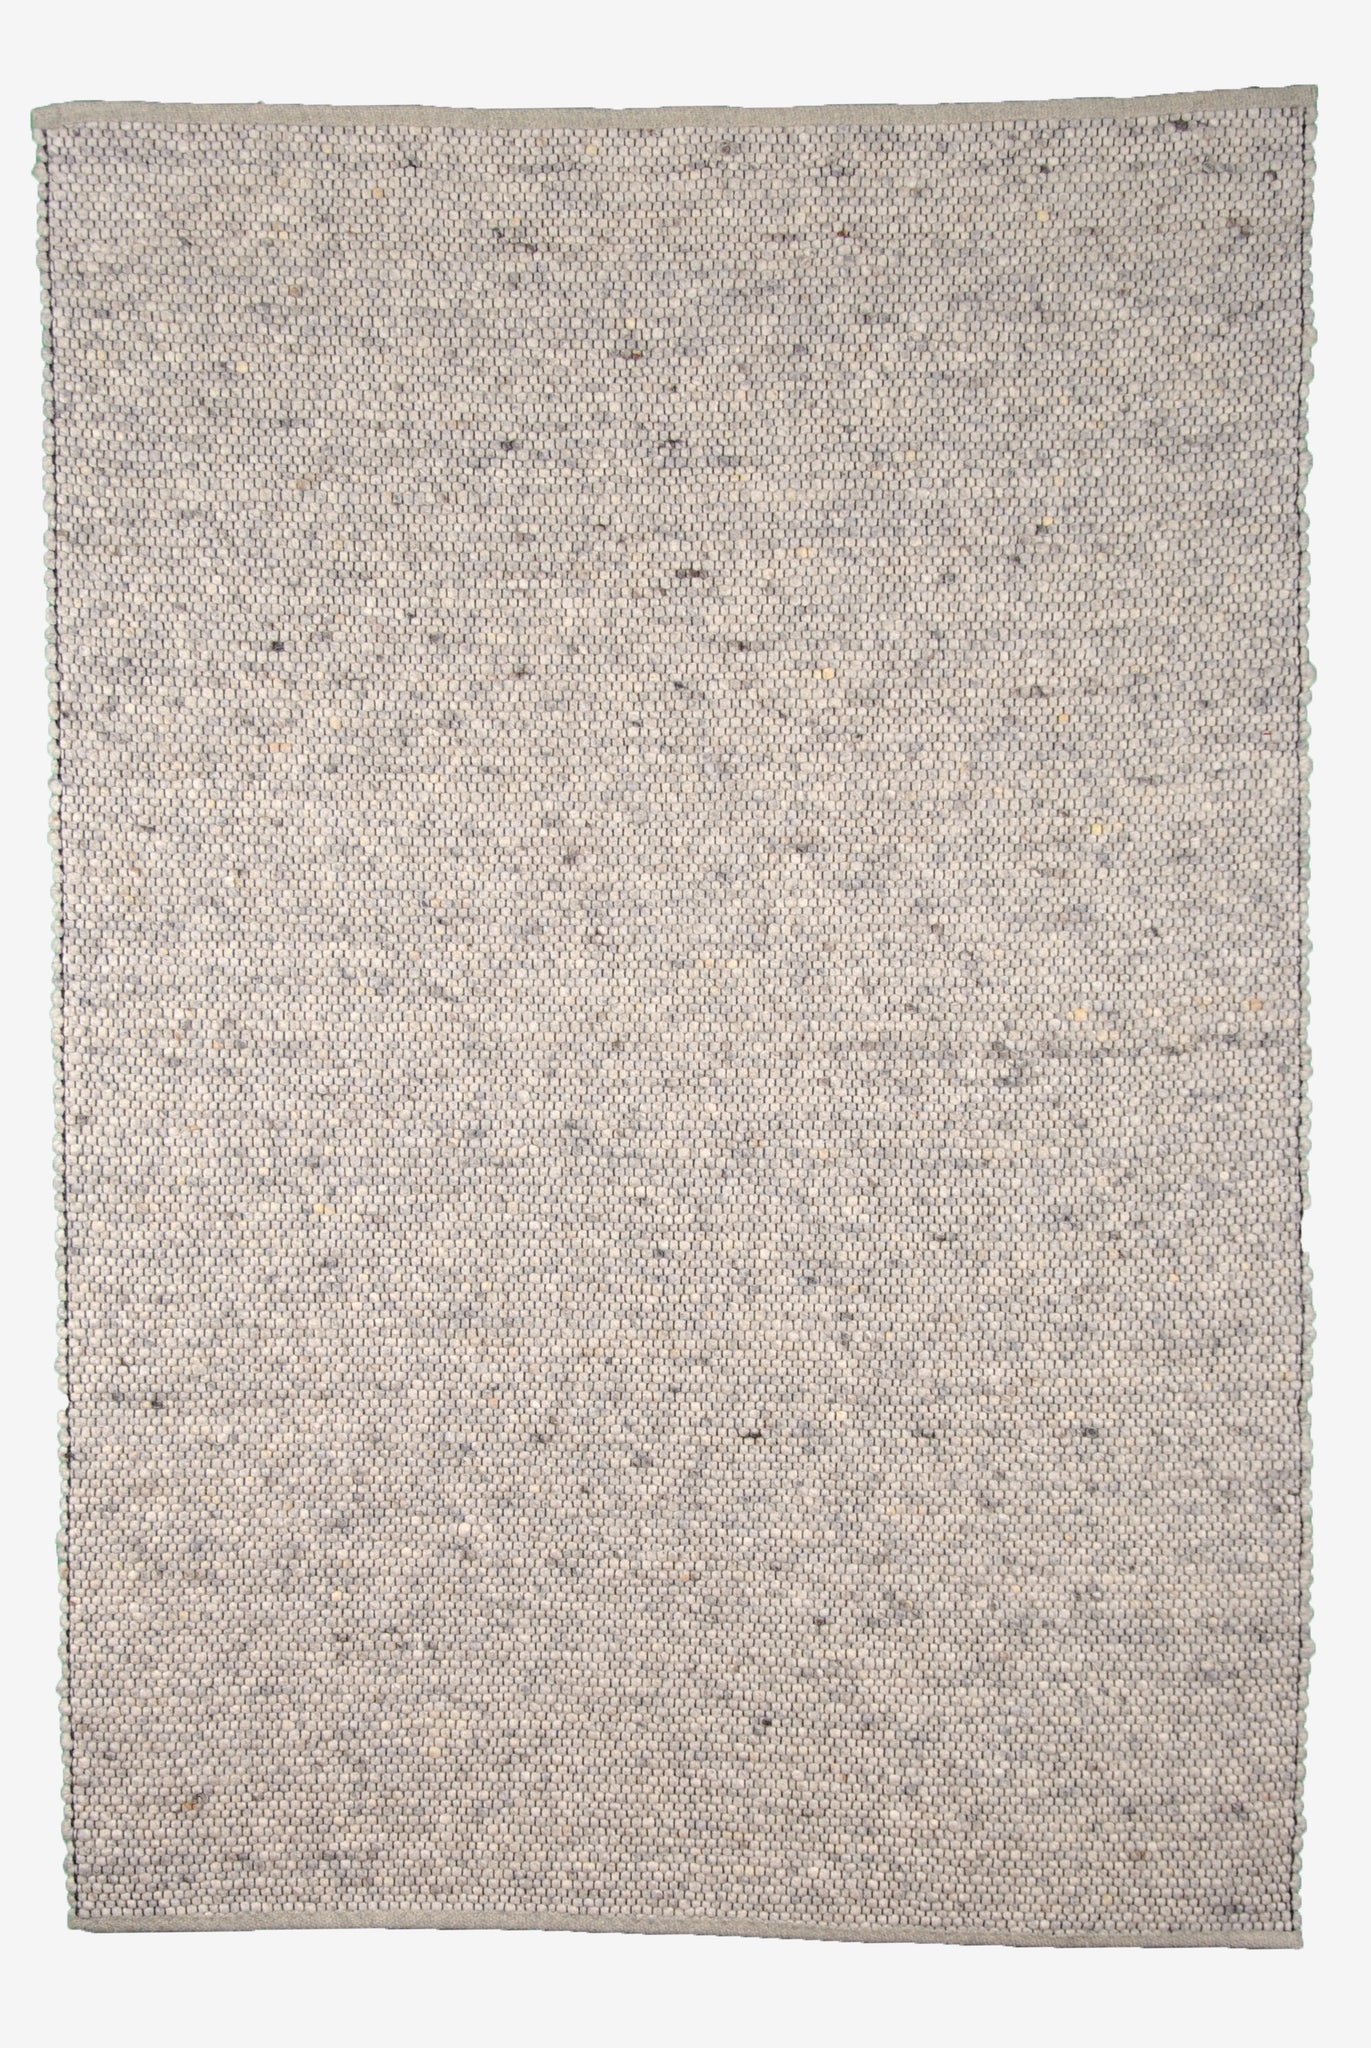 Handwebteppich Gotland - 0028 - 140 x 200 cm